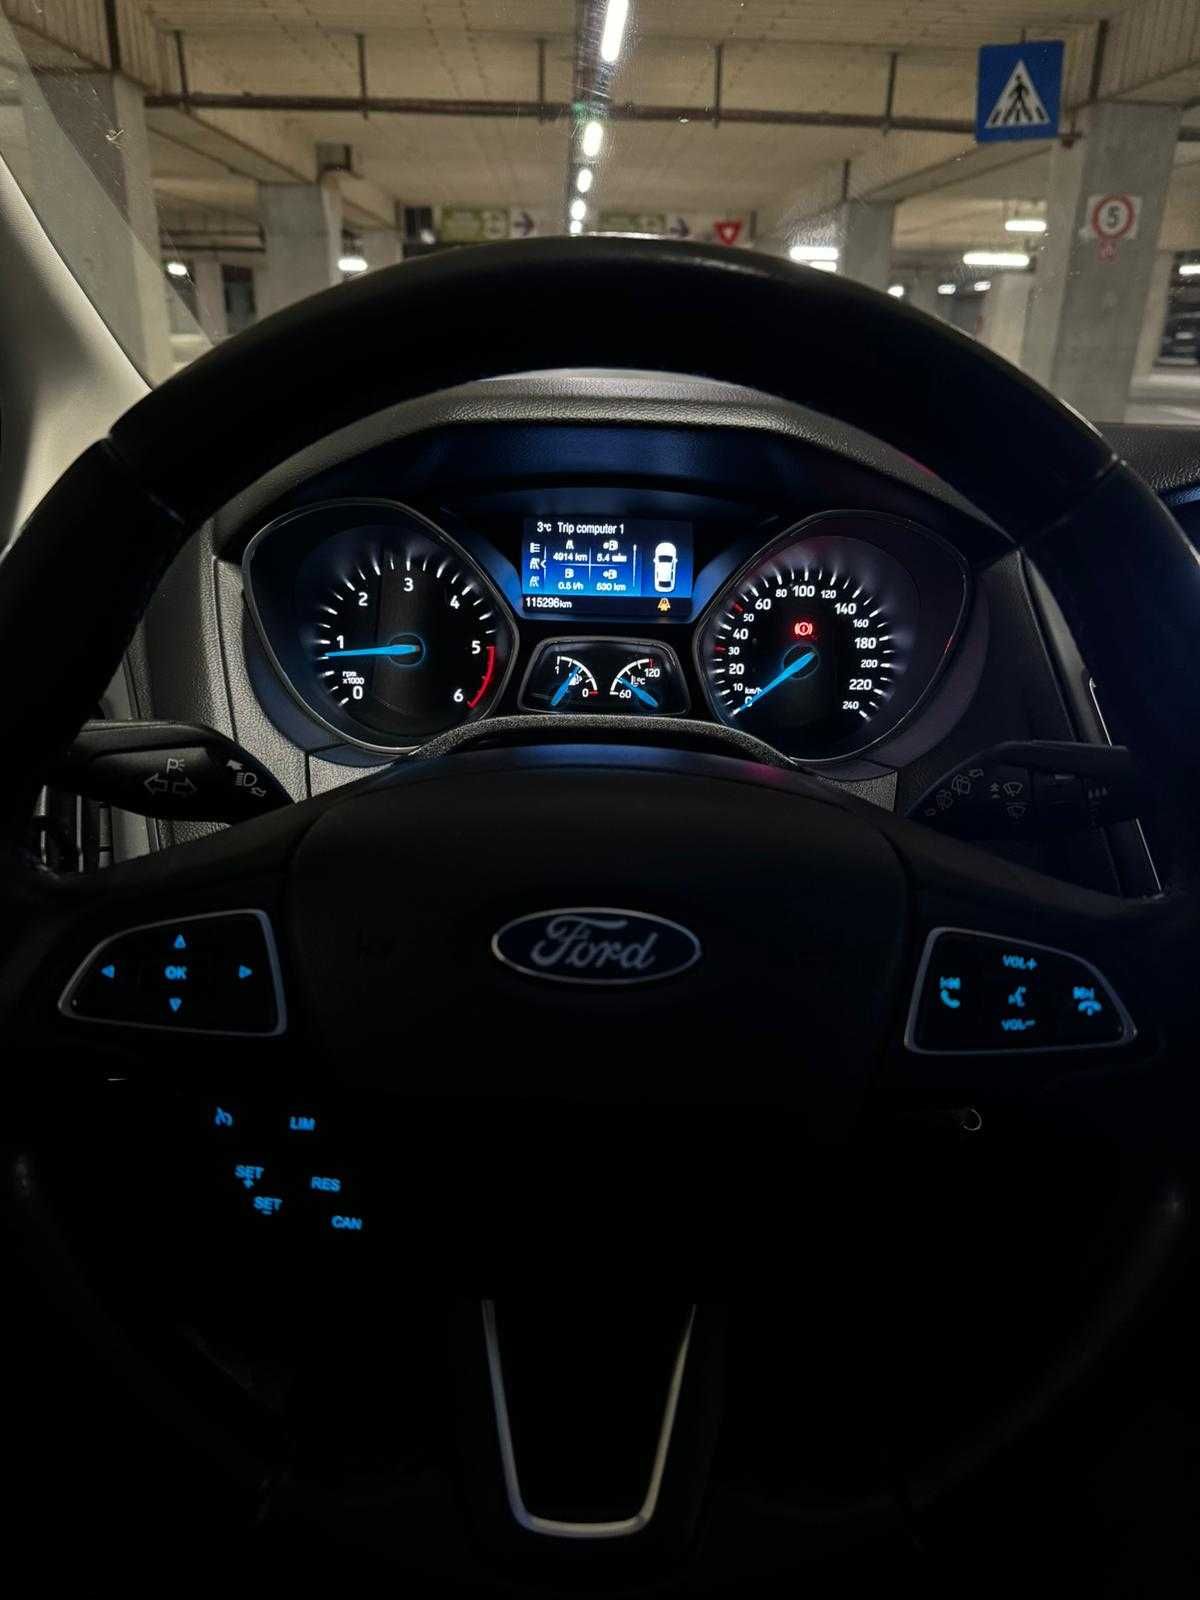 Ford Focus 2019 Alb